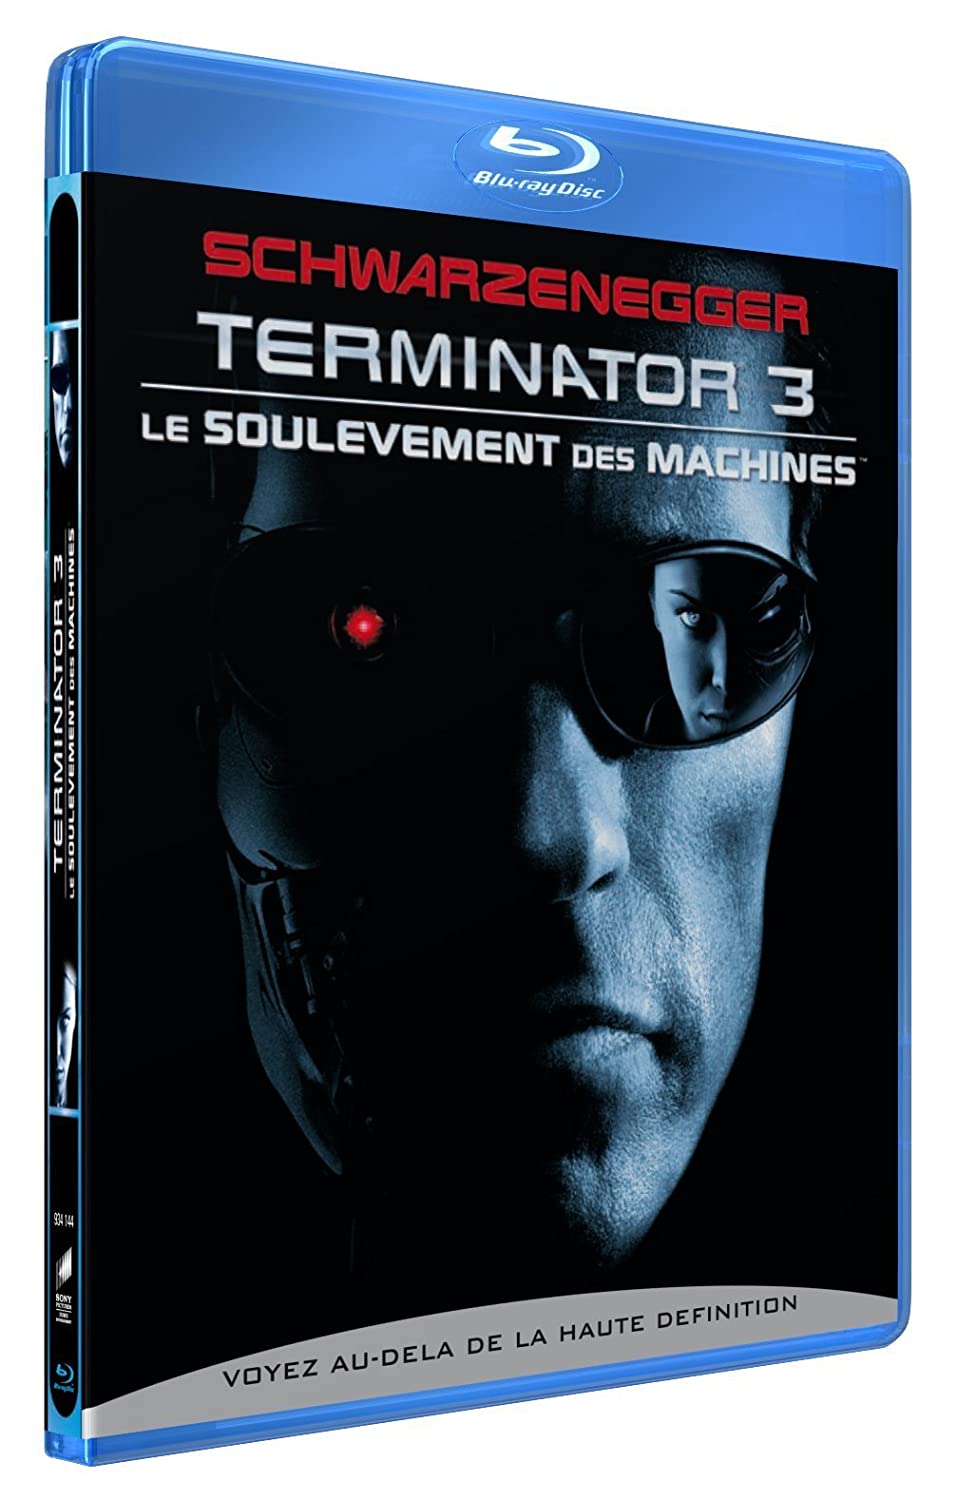 Terminator 3 - Le Soulèvement des Machines 712L4TyAyHS._SL1500_